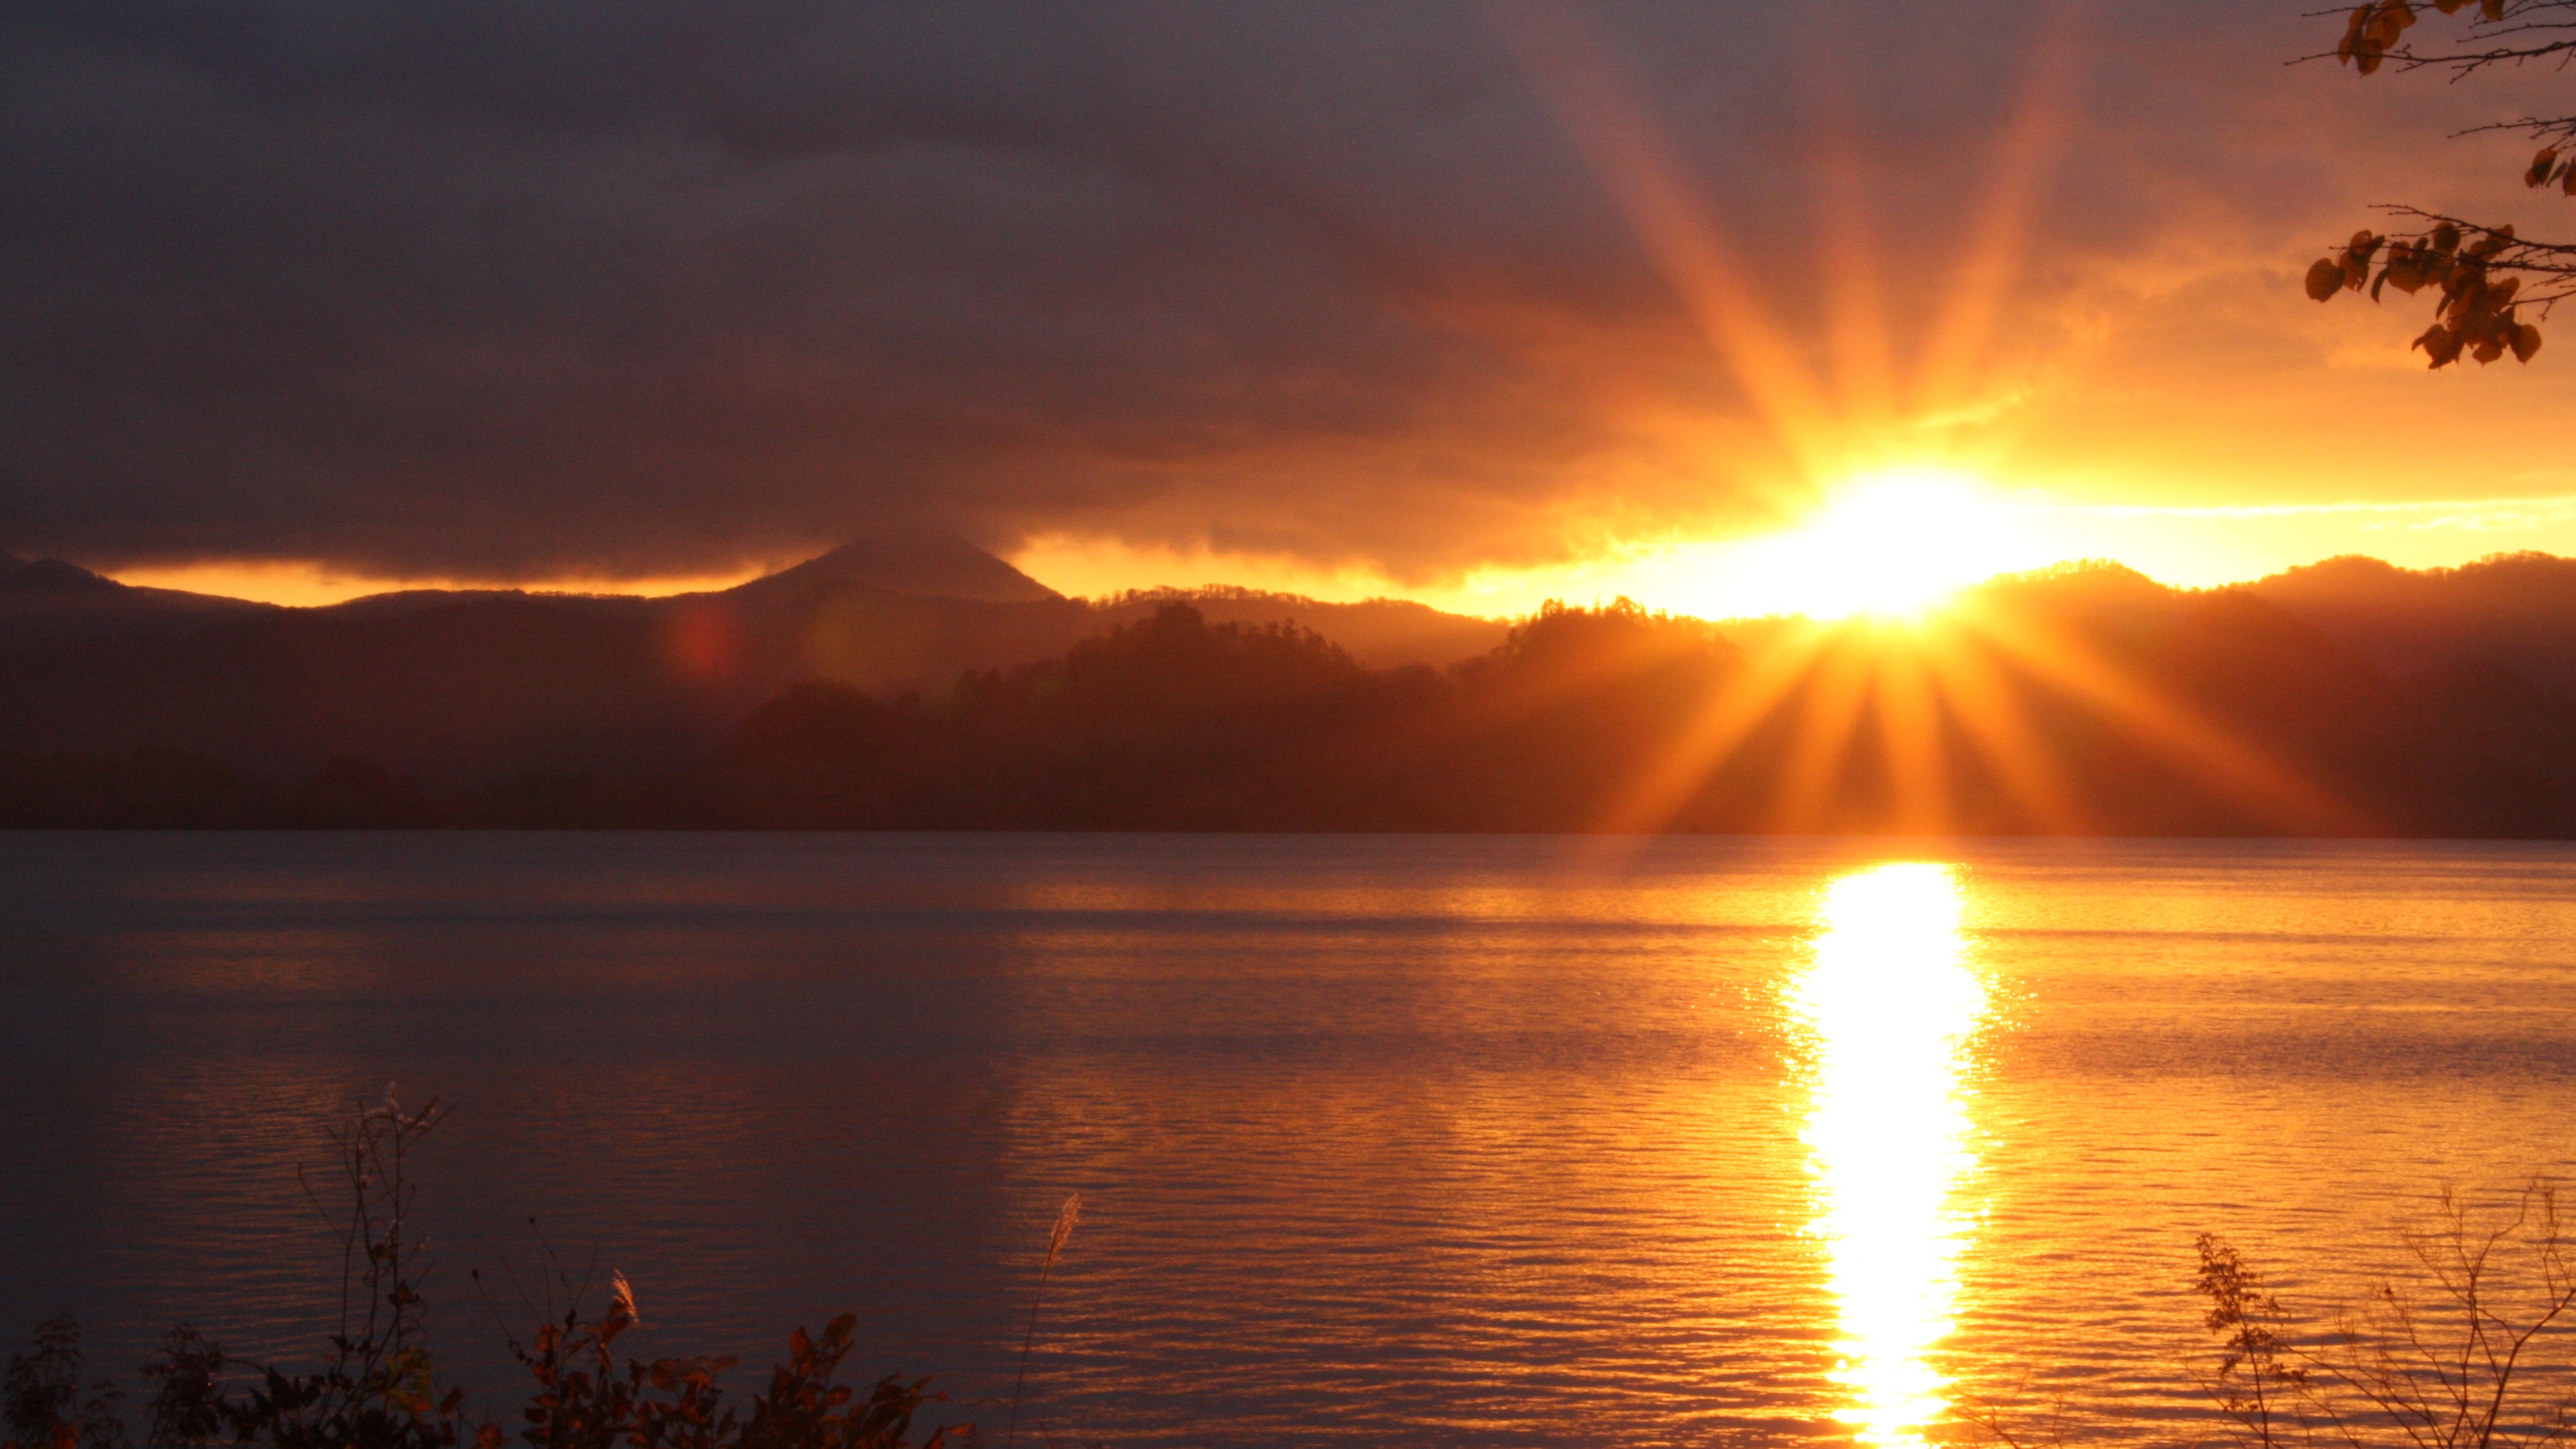 【朝日と十和田湖】のぼる朝日と十和田湖の風景は心に残る絶景